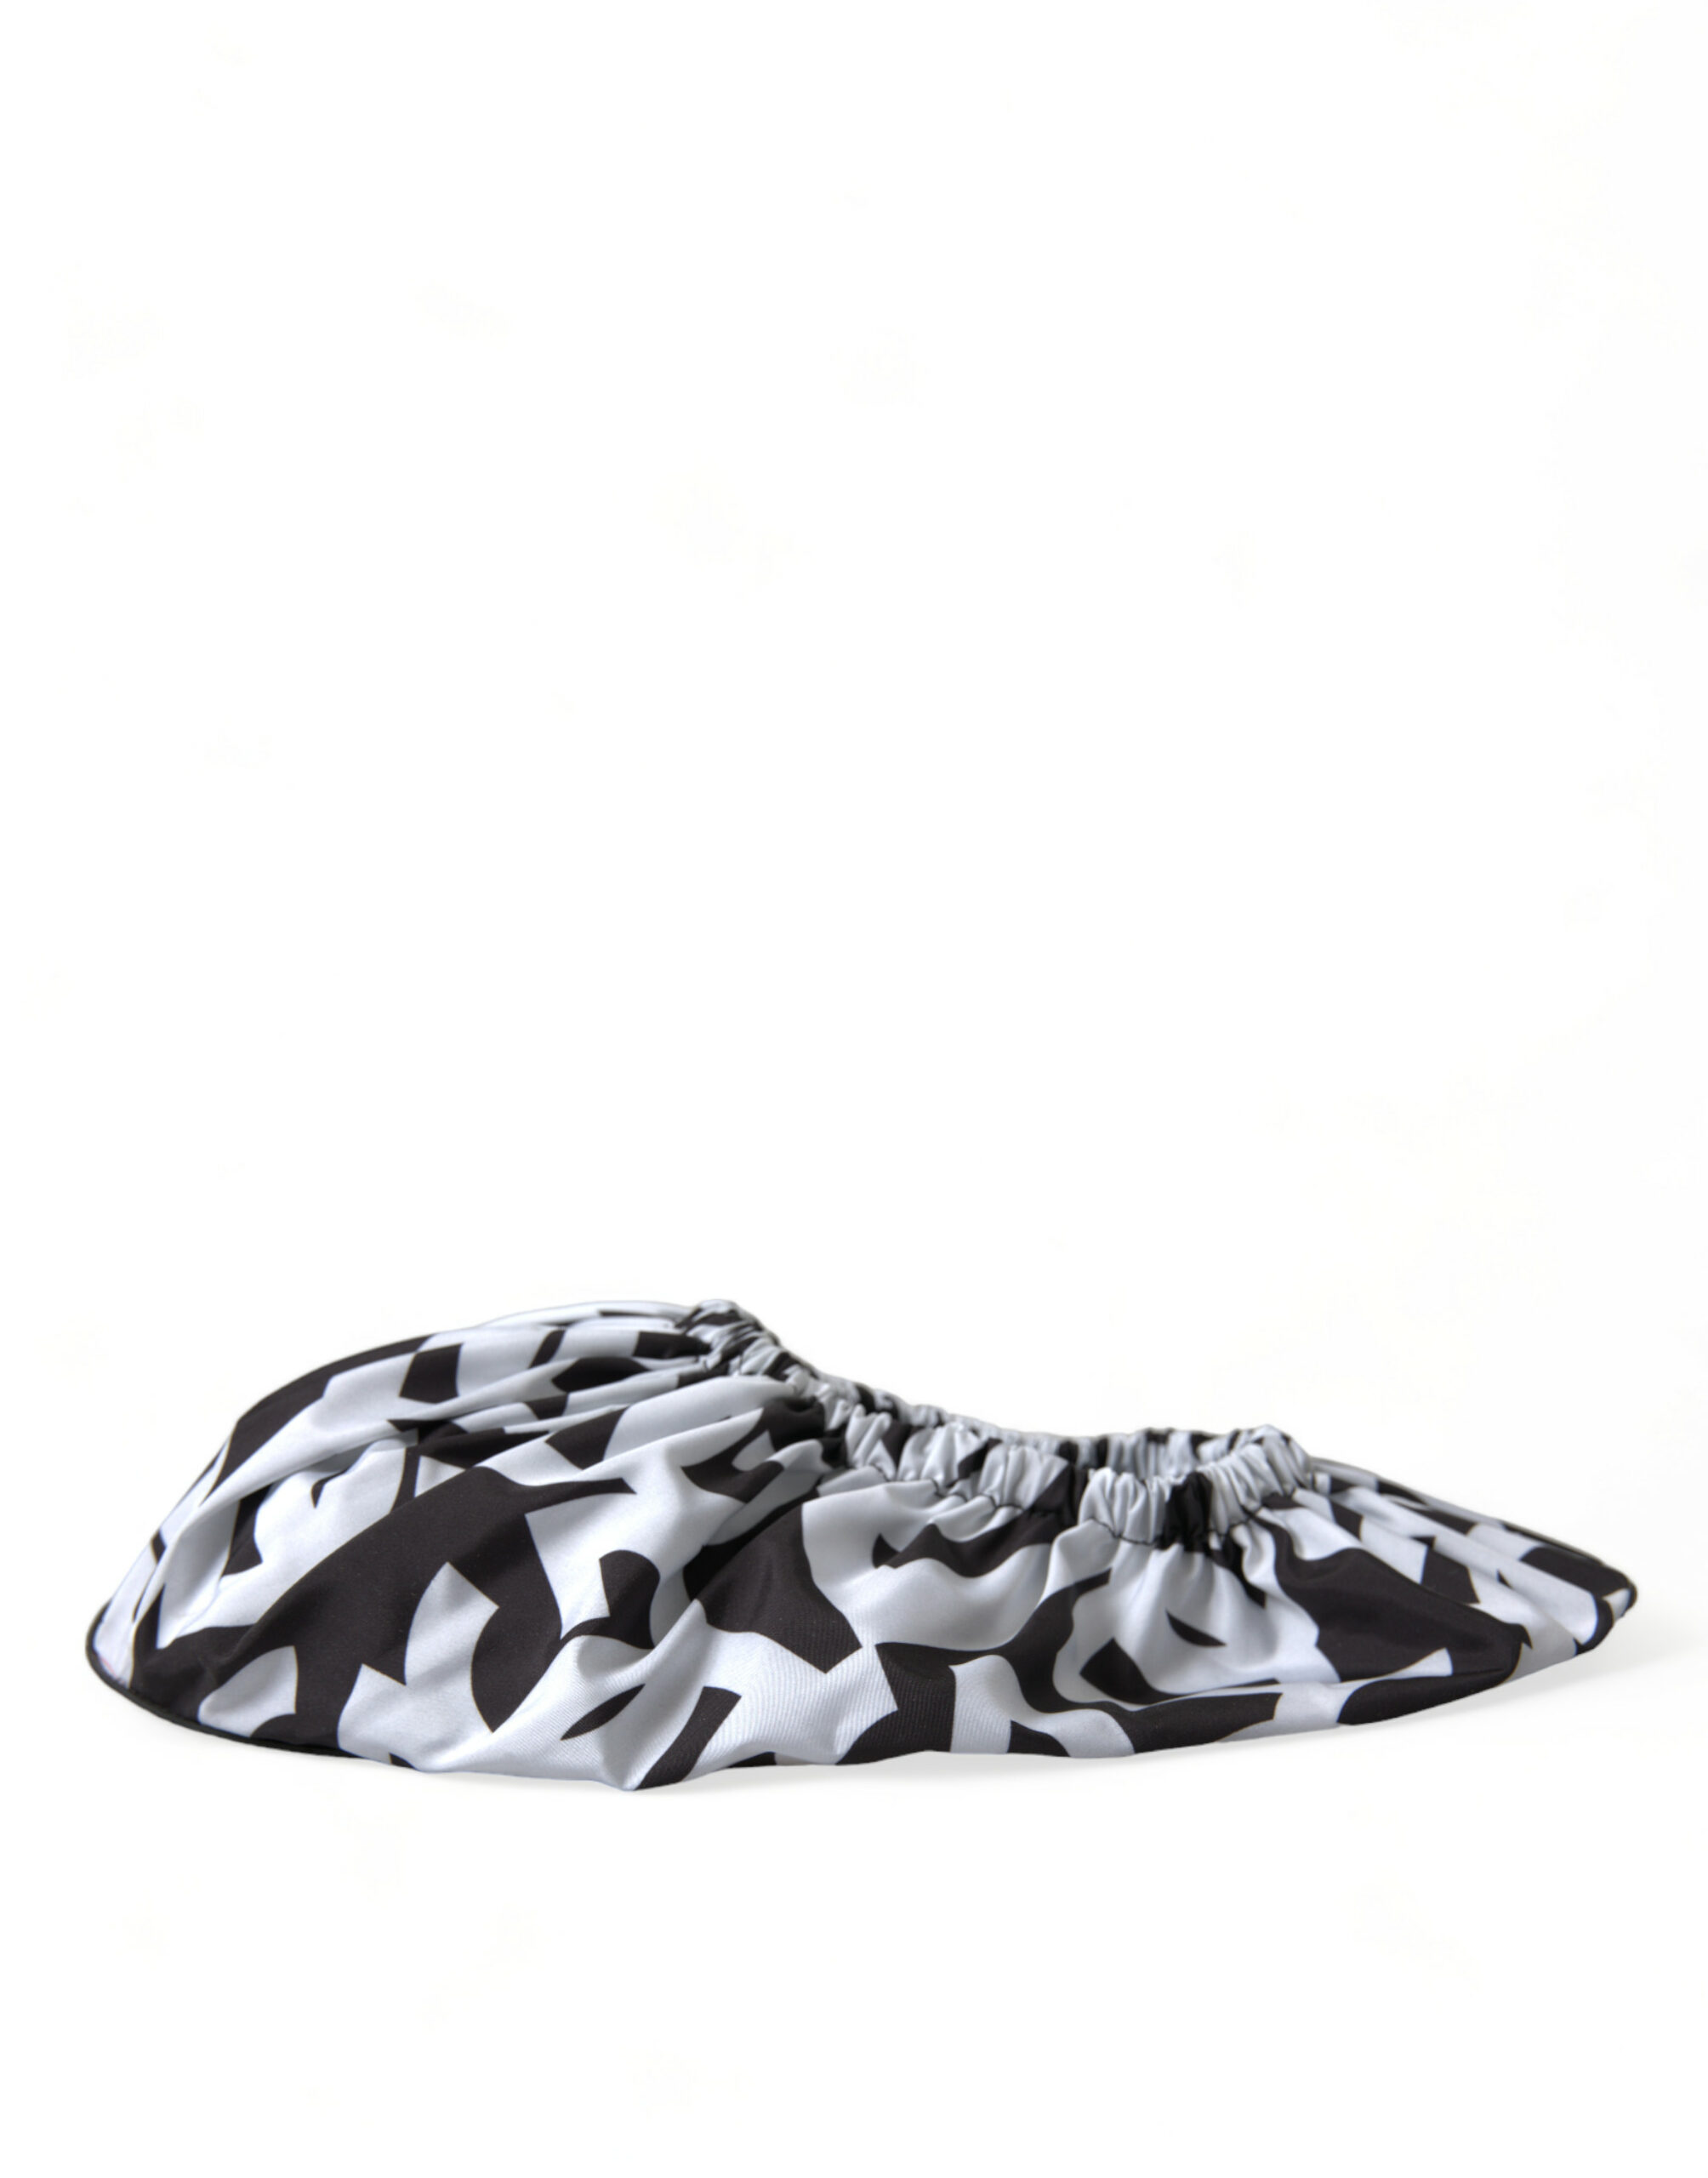 Black/White Dolce & Gabbana White Logo Print Nylon Slip On Flats Shoes EU39/US8.5